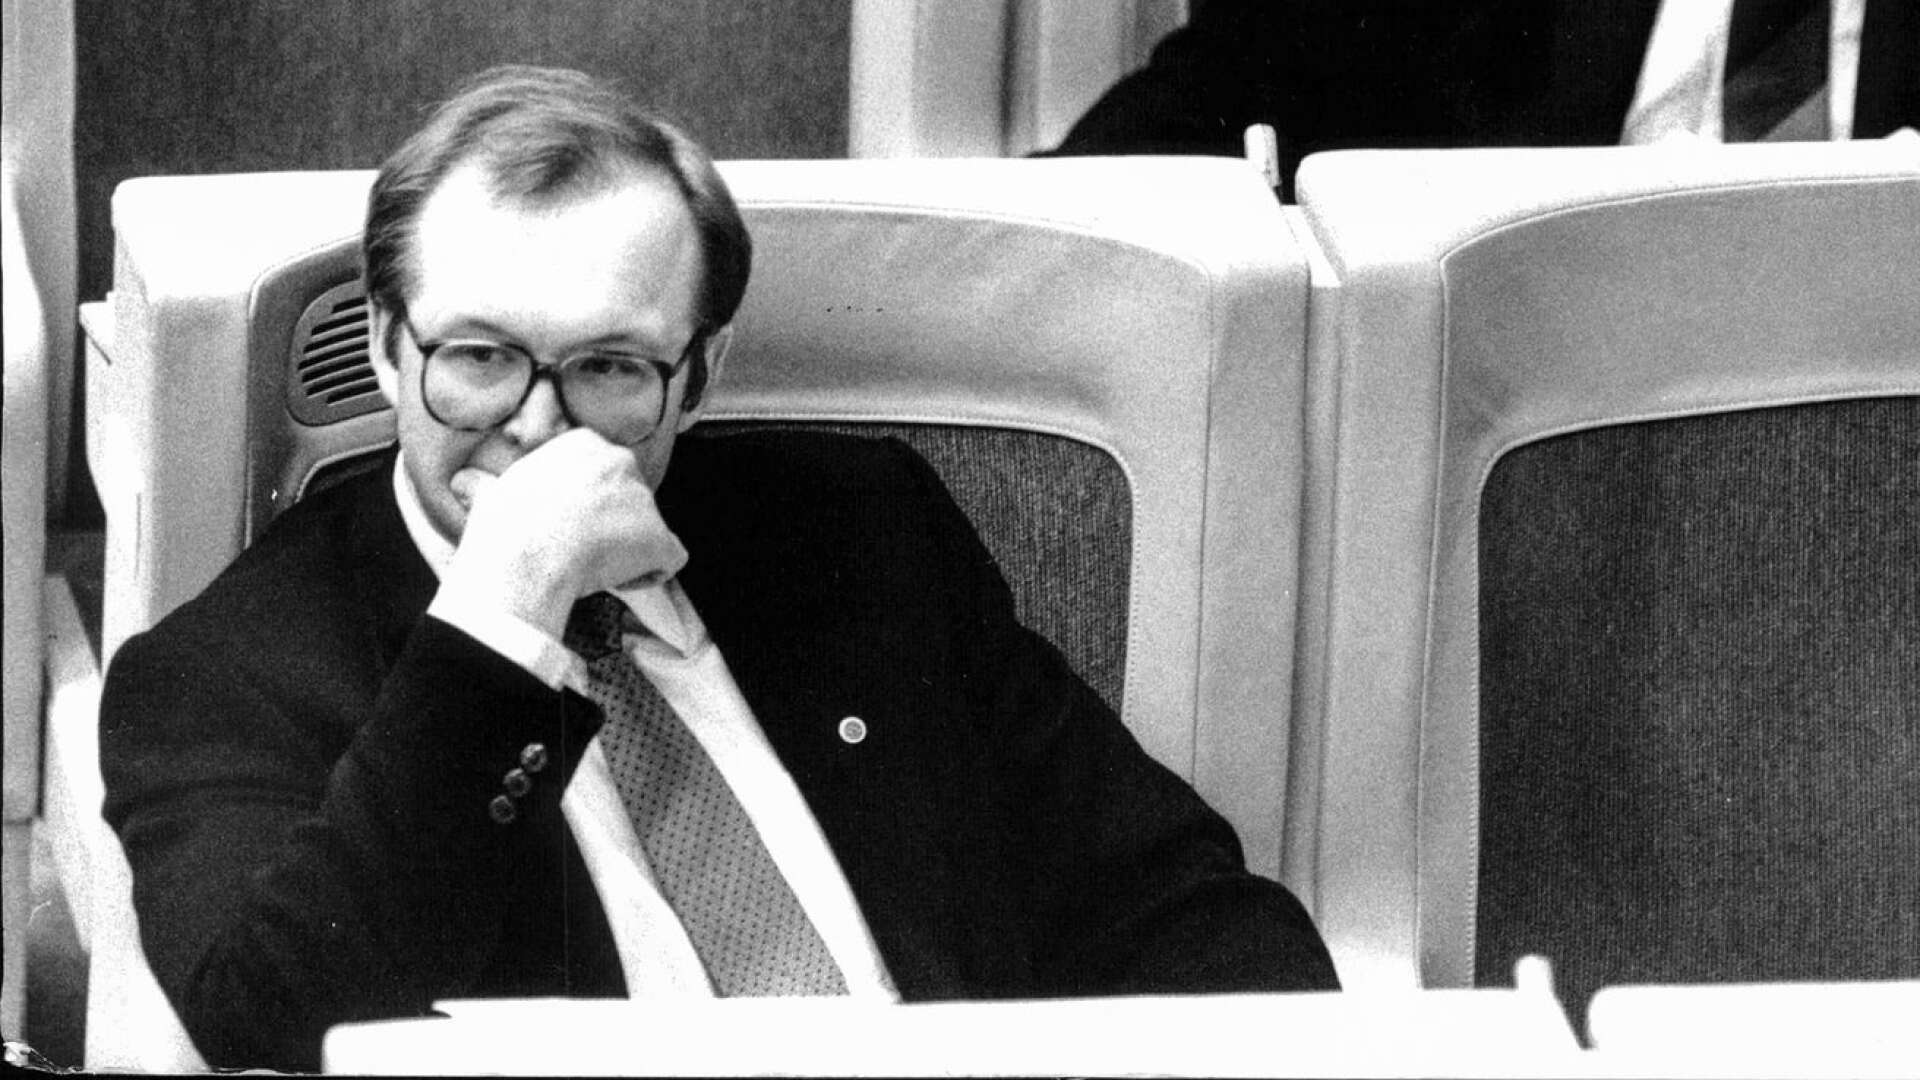 Kommunaliseringen, som klubbades igenom 1989 med skolminister Göran Persson (S) i spetsen, slog likvärdigheten i spillror, skriver Anton Sjöstedt.